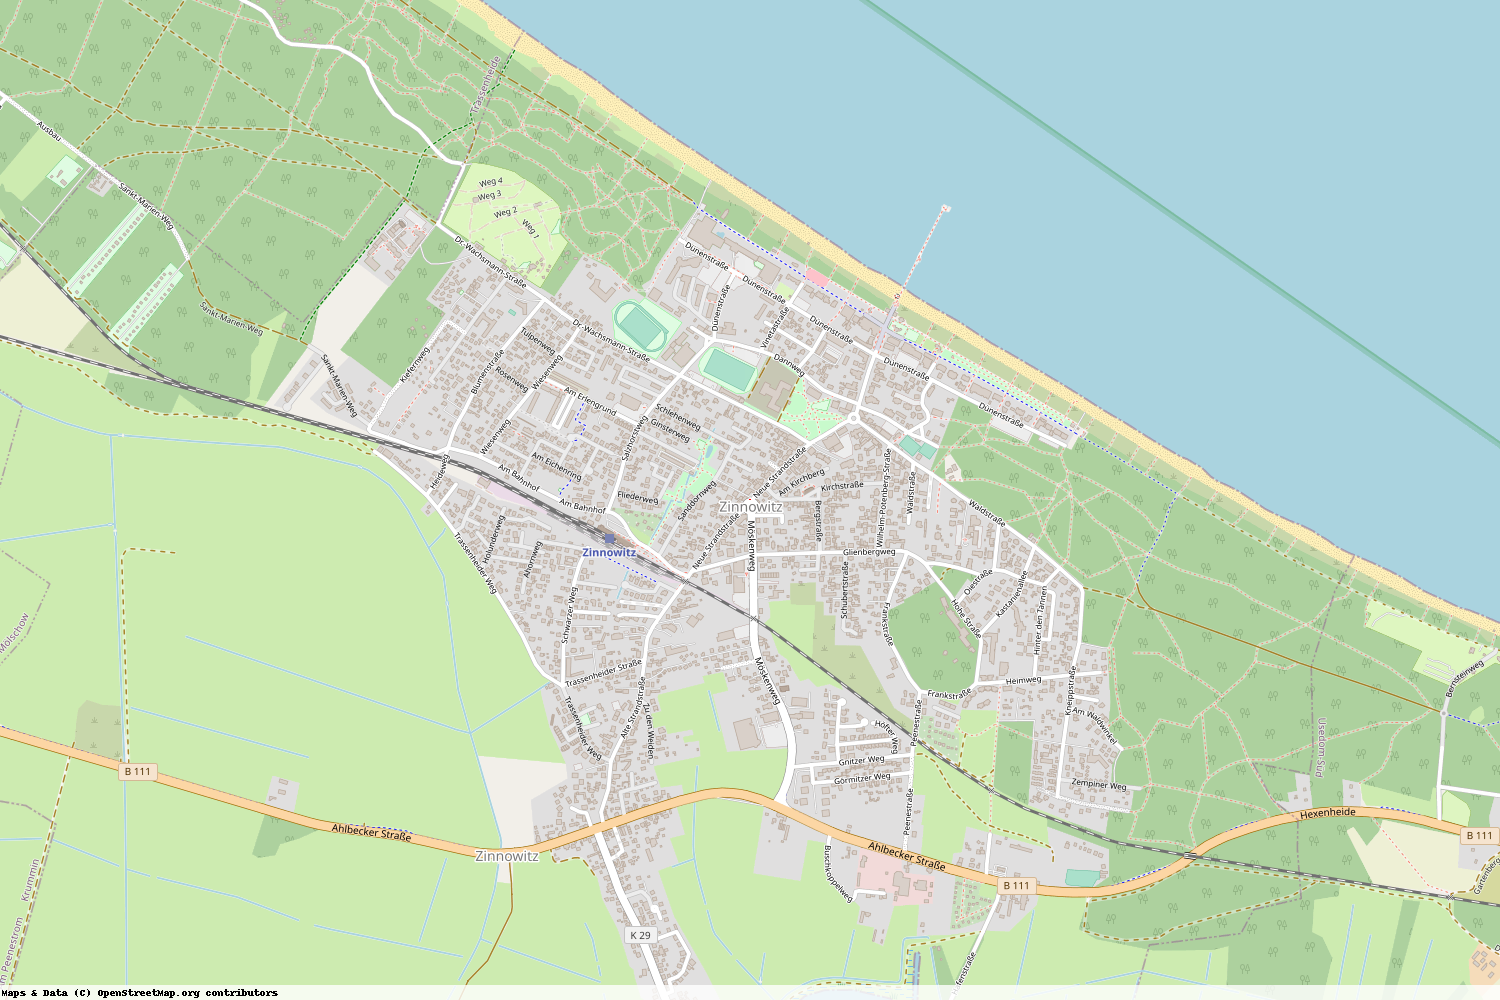 Ist gerade Stromausfall in Mecklenburg-Vorpommern - Vorpommern-Greifswald - Zinnowitz?